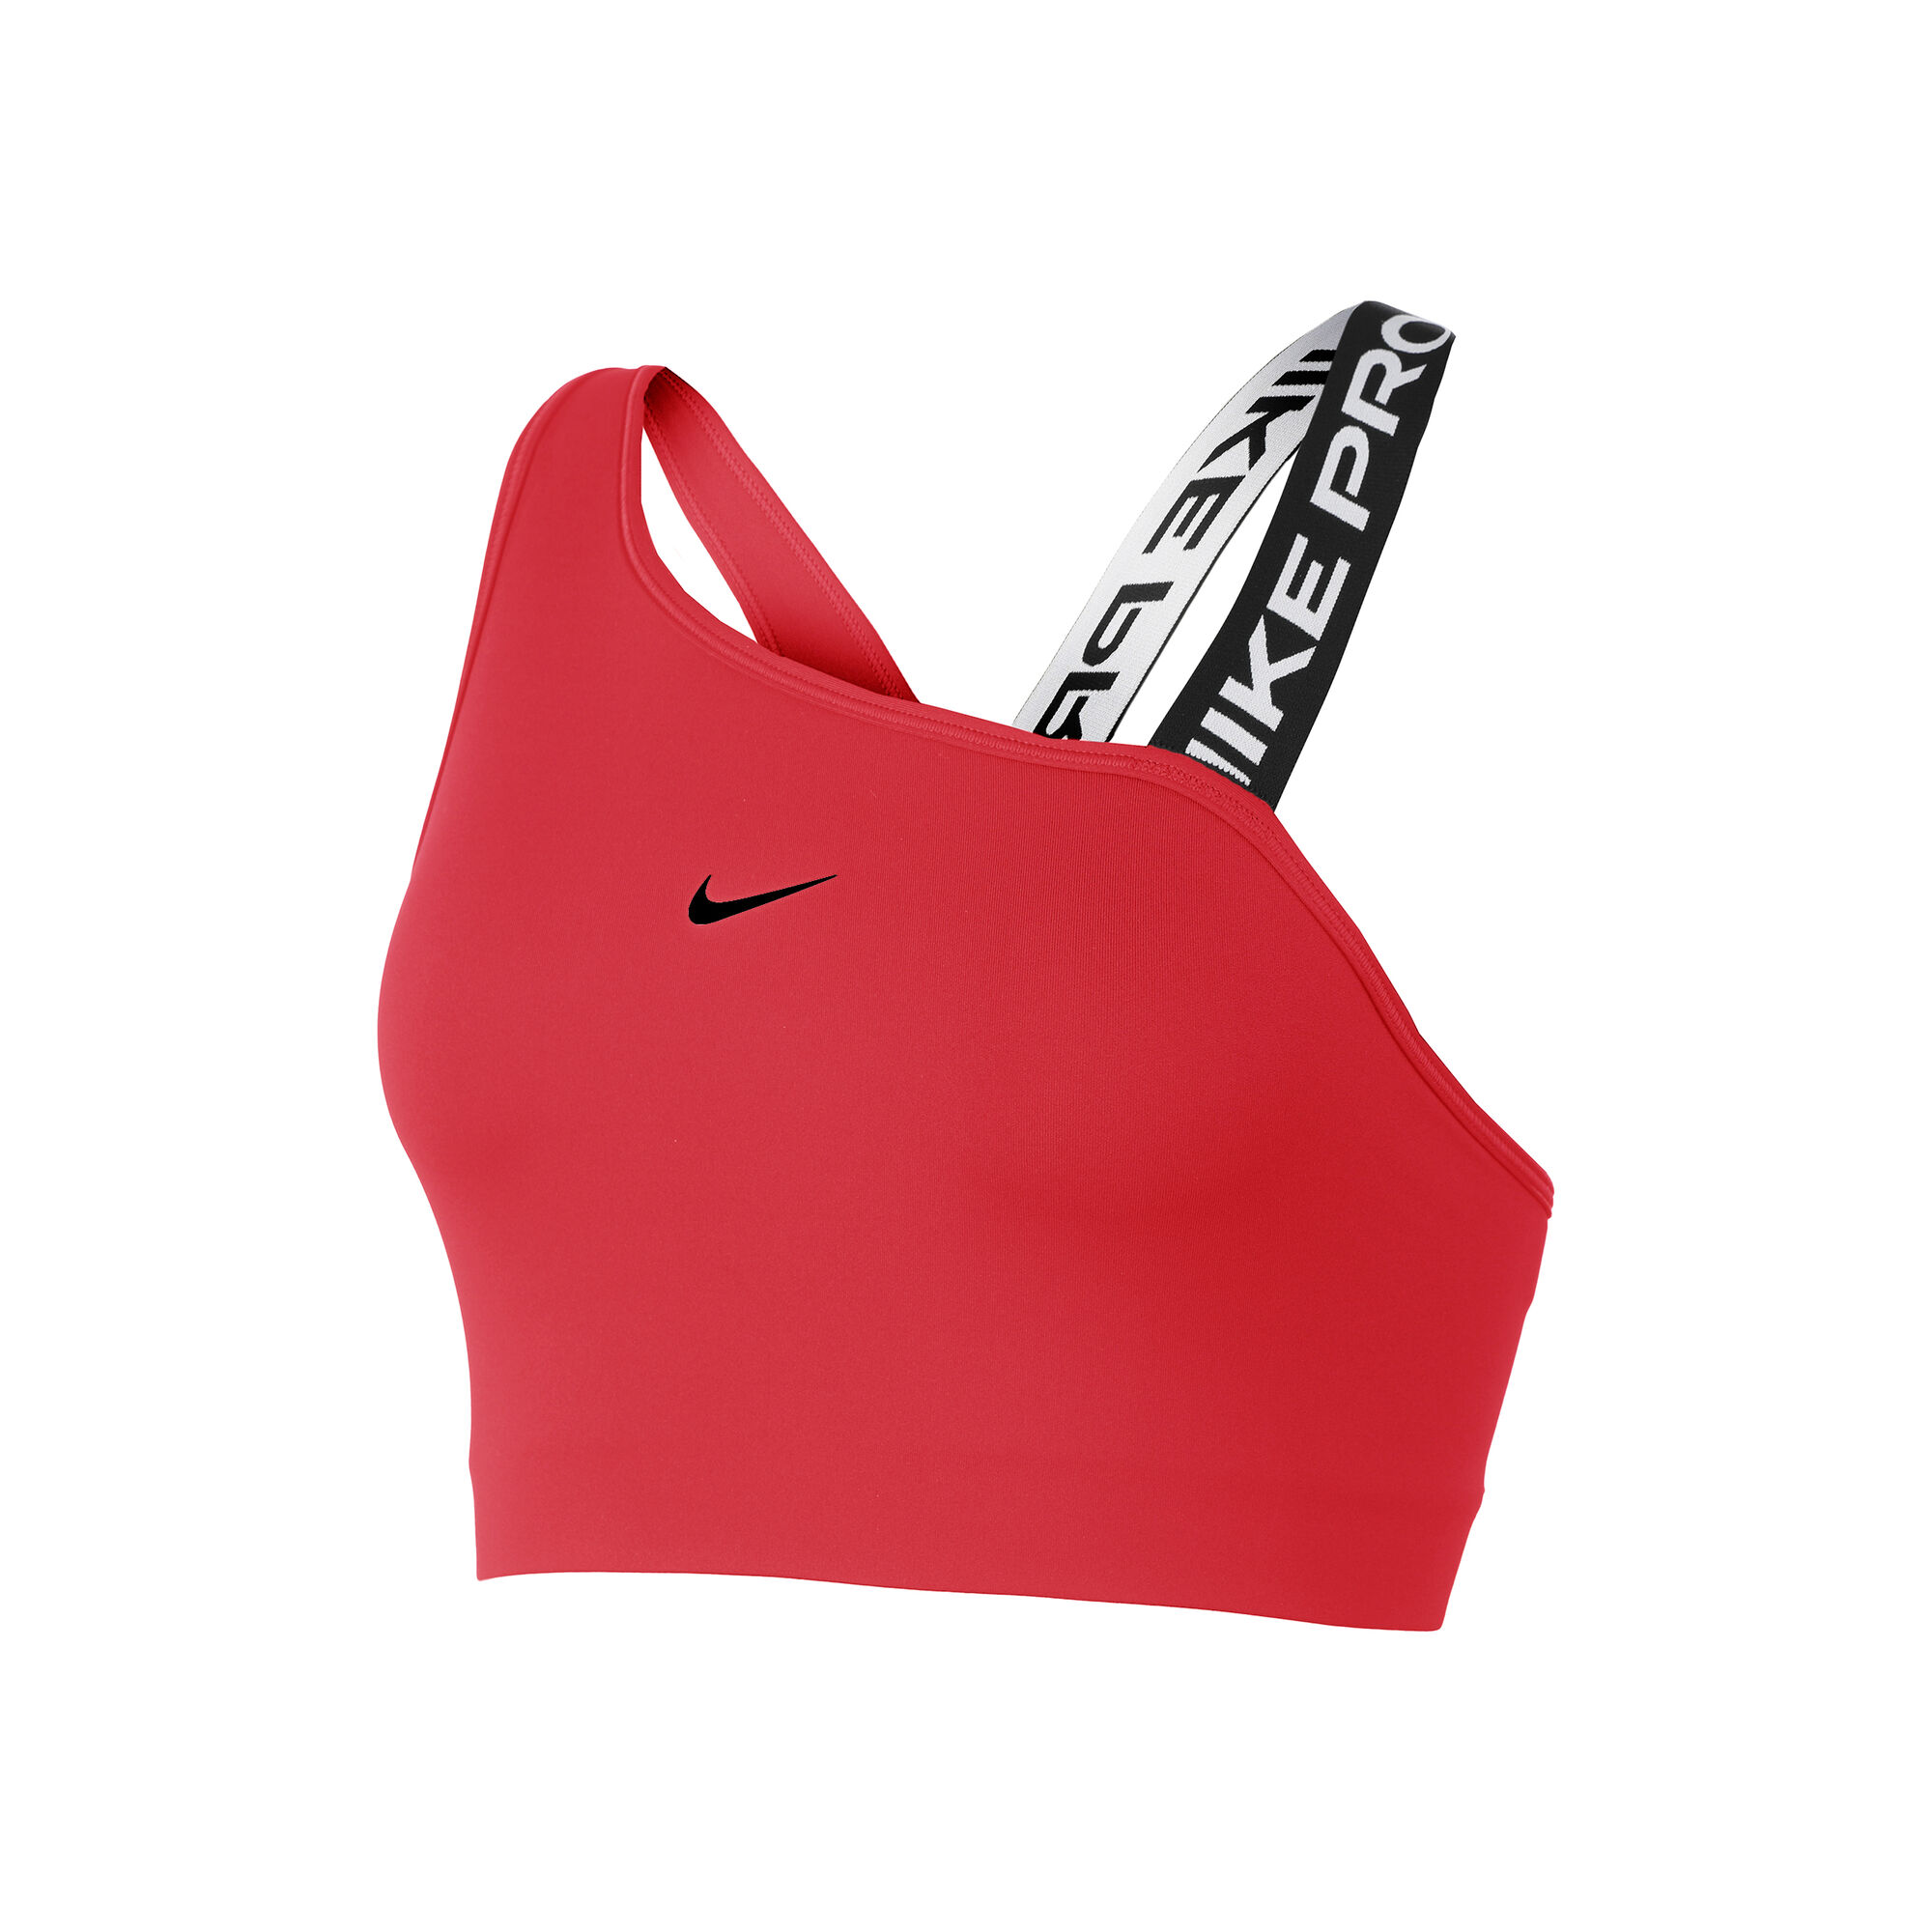 Womens Nike Pro Sports Bras.